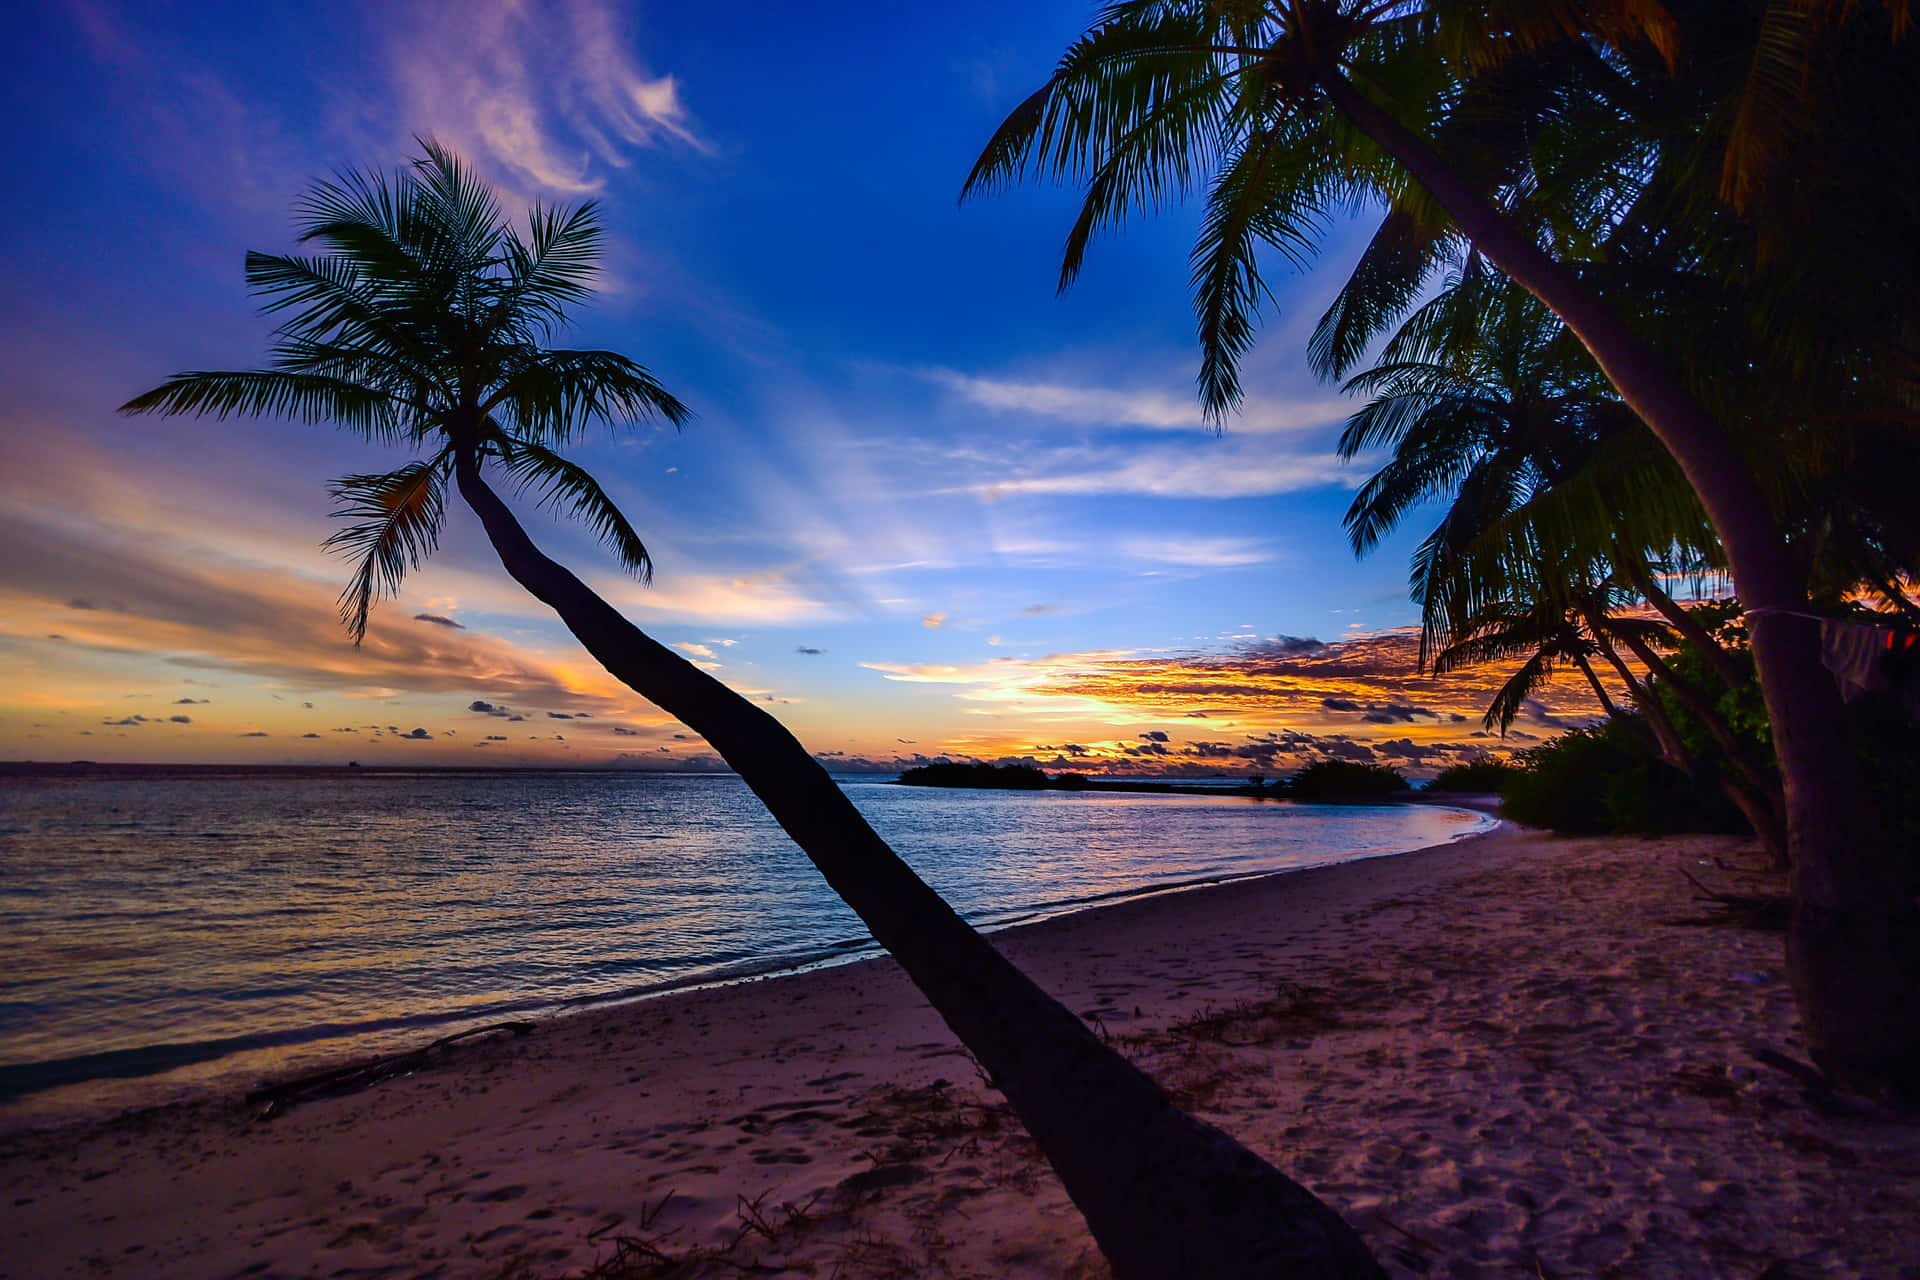 Sientela Tranquilidad Del Océano En Esta Hermosa Puesta De Sol En La Playa. Fondo de pantalla